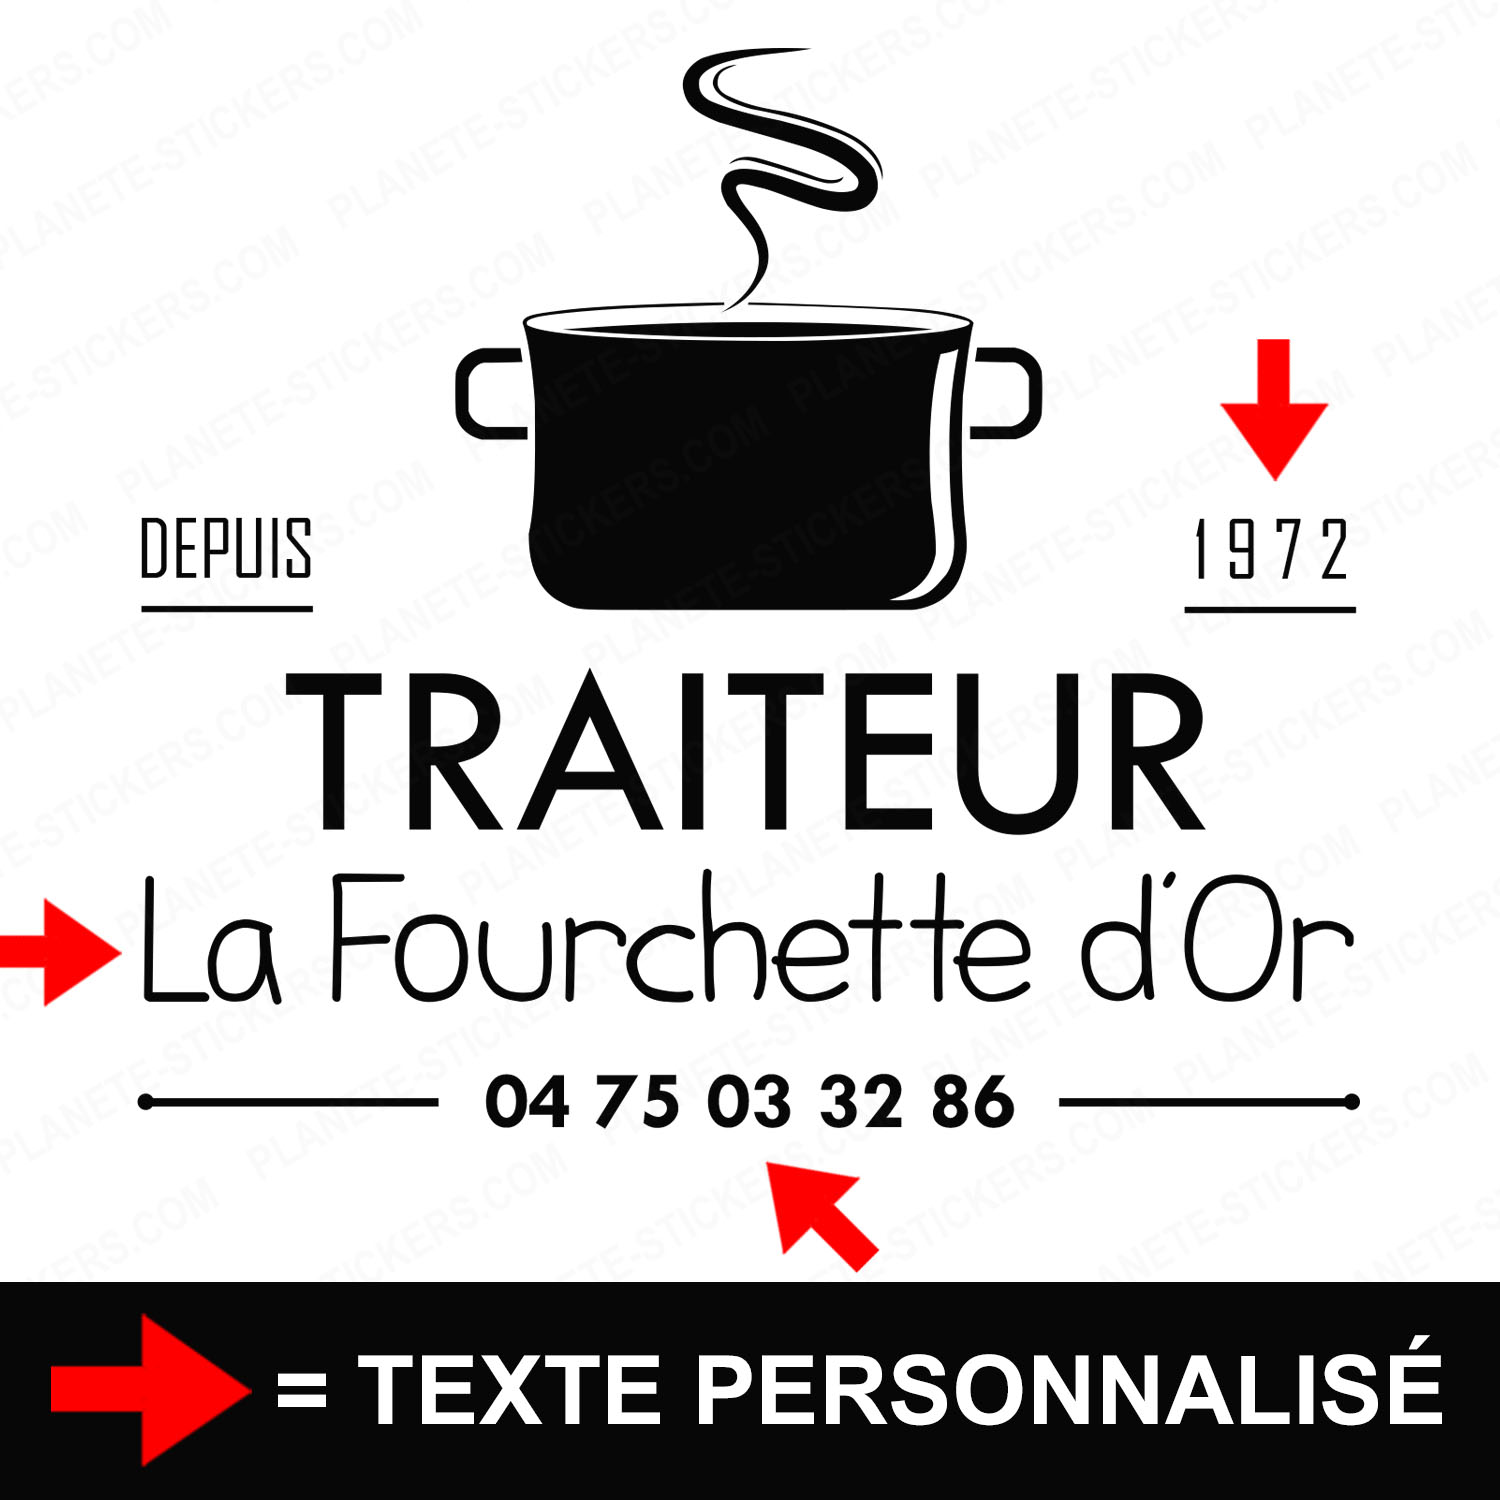 ref9traiteurvitrine-stickers-traiteur-vitrine-sticker-personnalisé-autocollant-pro-restaurateur-restaurant-vitre-professionnel-logo-marmite-2